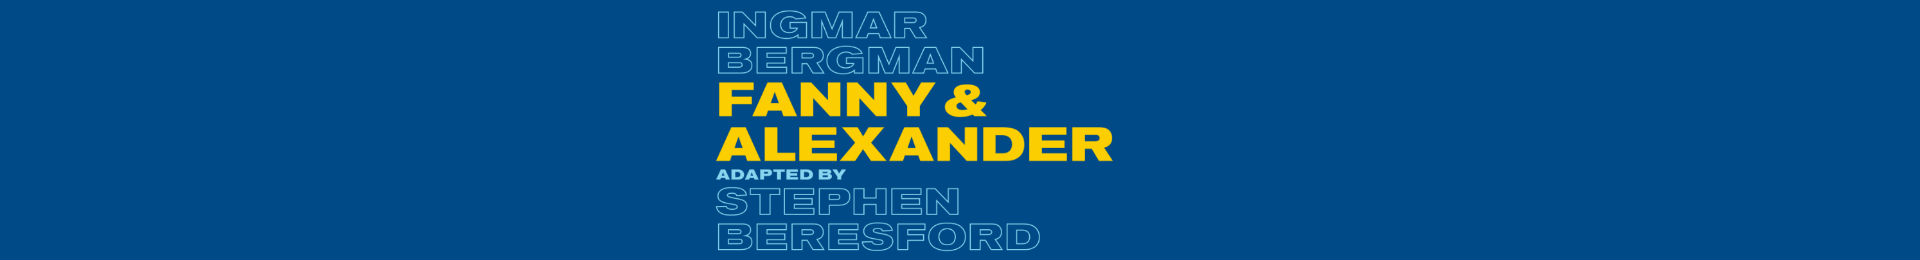 Fanny & Alexander banner image